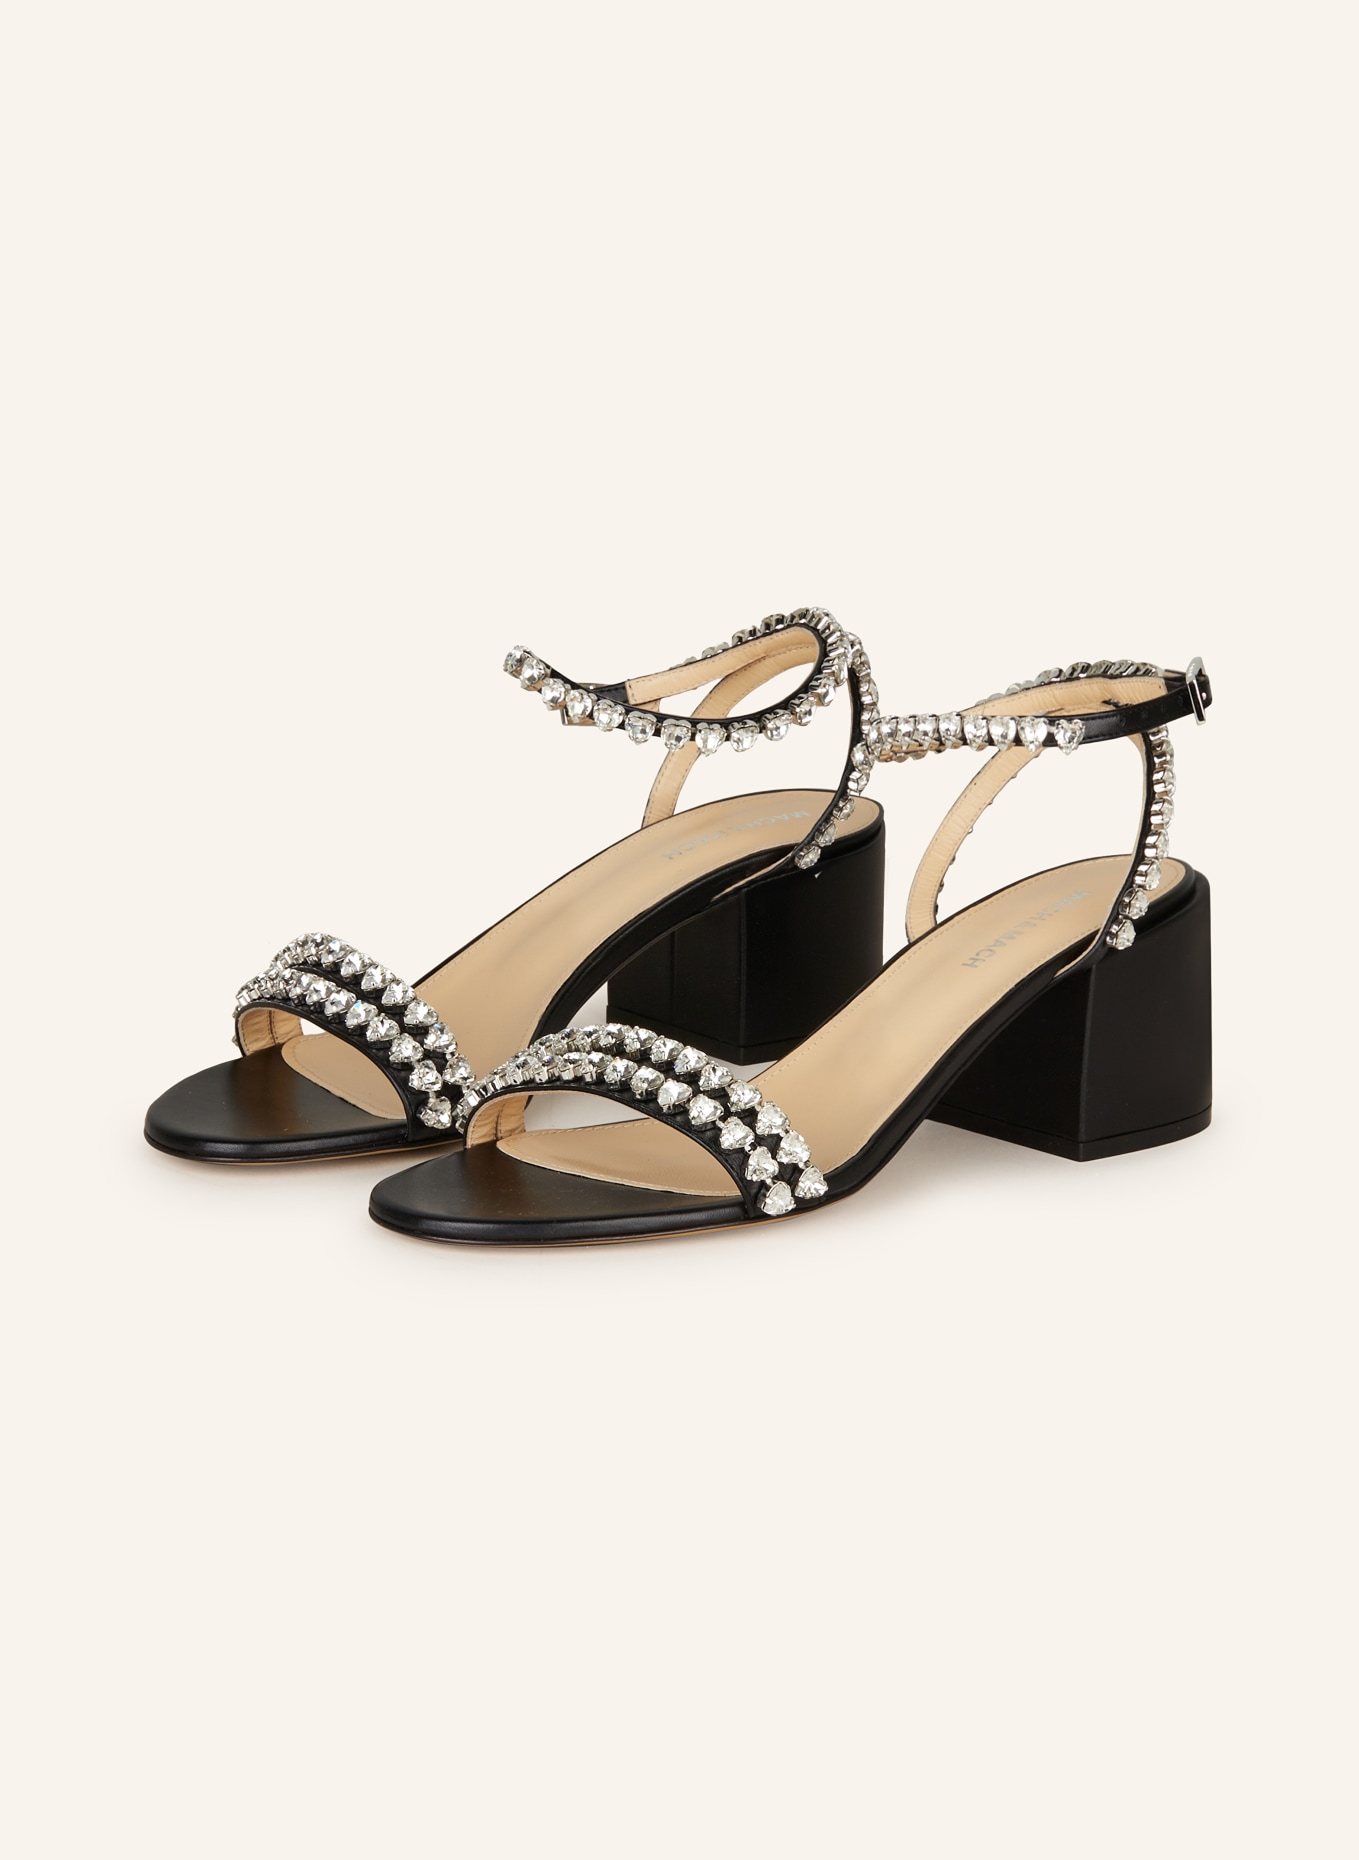 MACH & MACH Sandals AUDREY with decorative gems, Color: BLACK (Image 1)